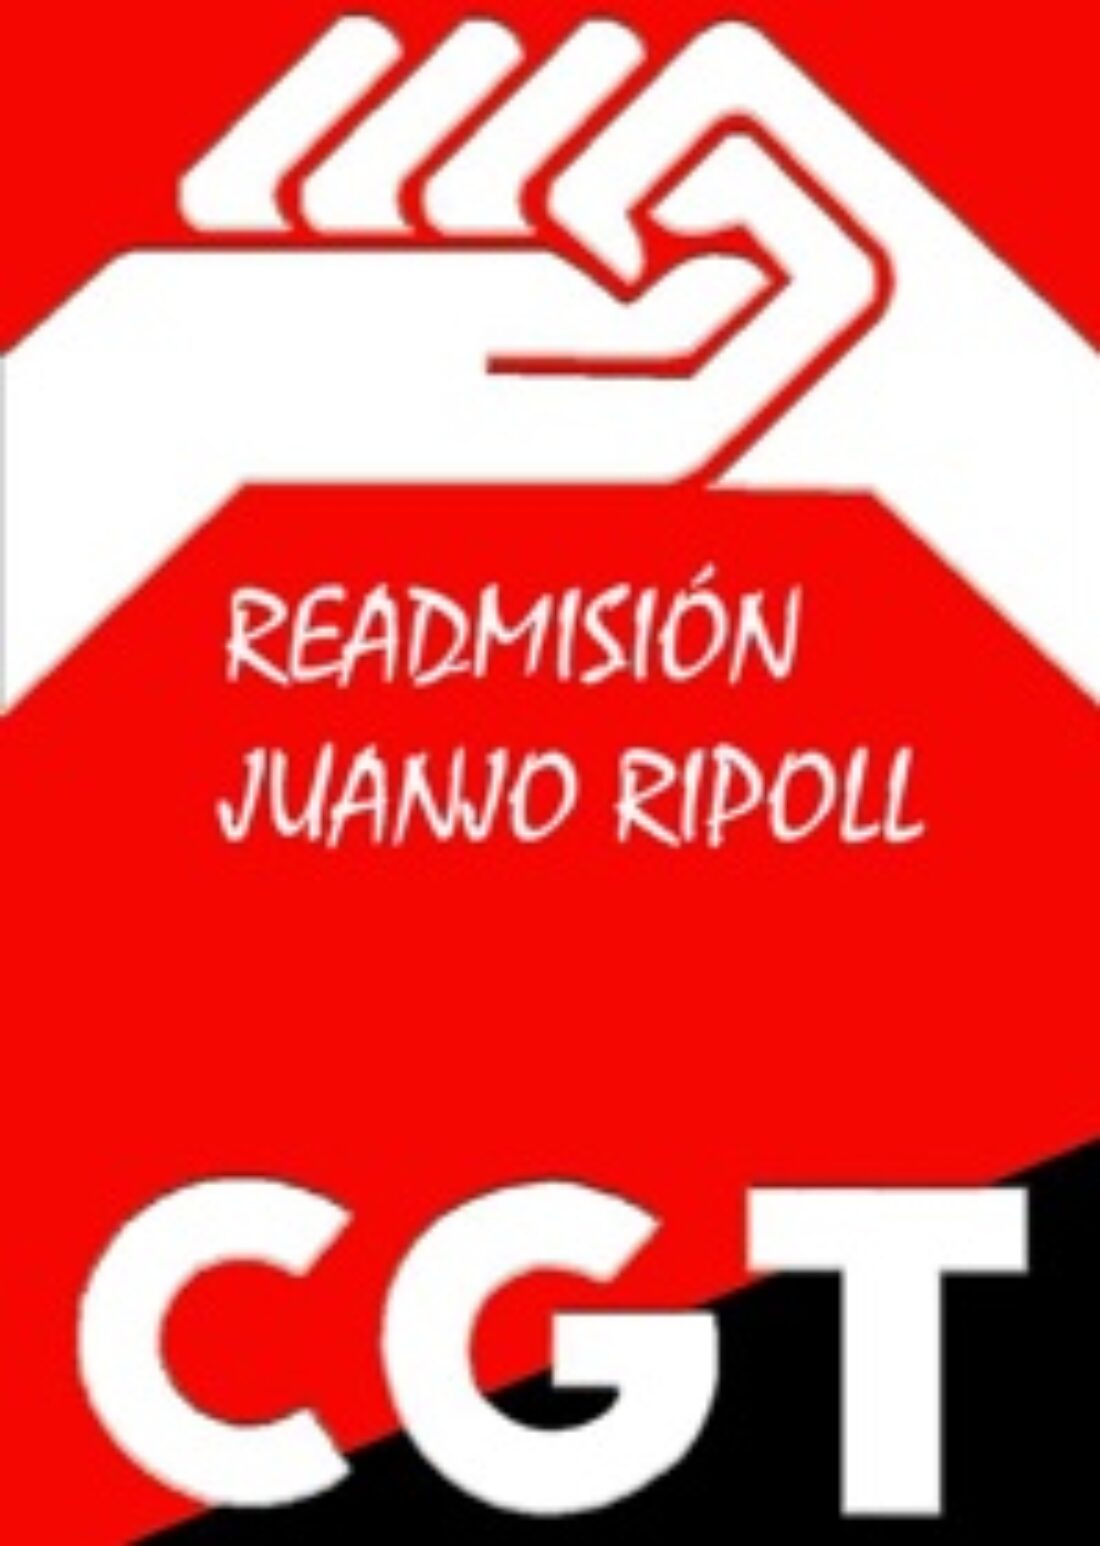 28 octubre Segorbe (Castellón) : Marcha por la readmisión de Juanjo Ripoll